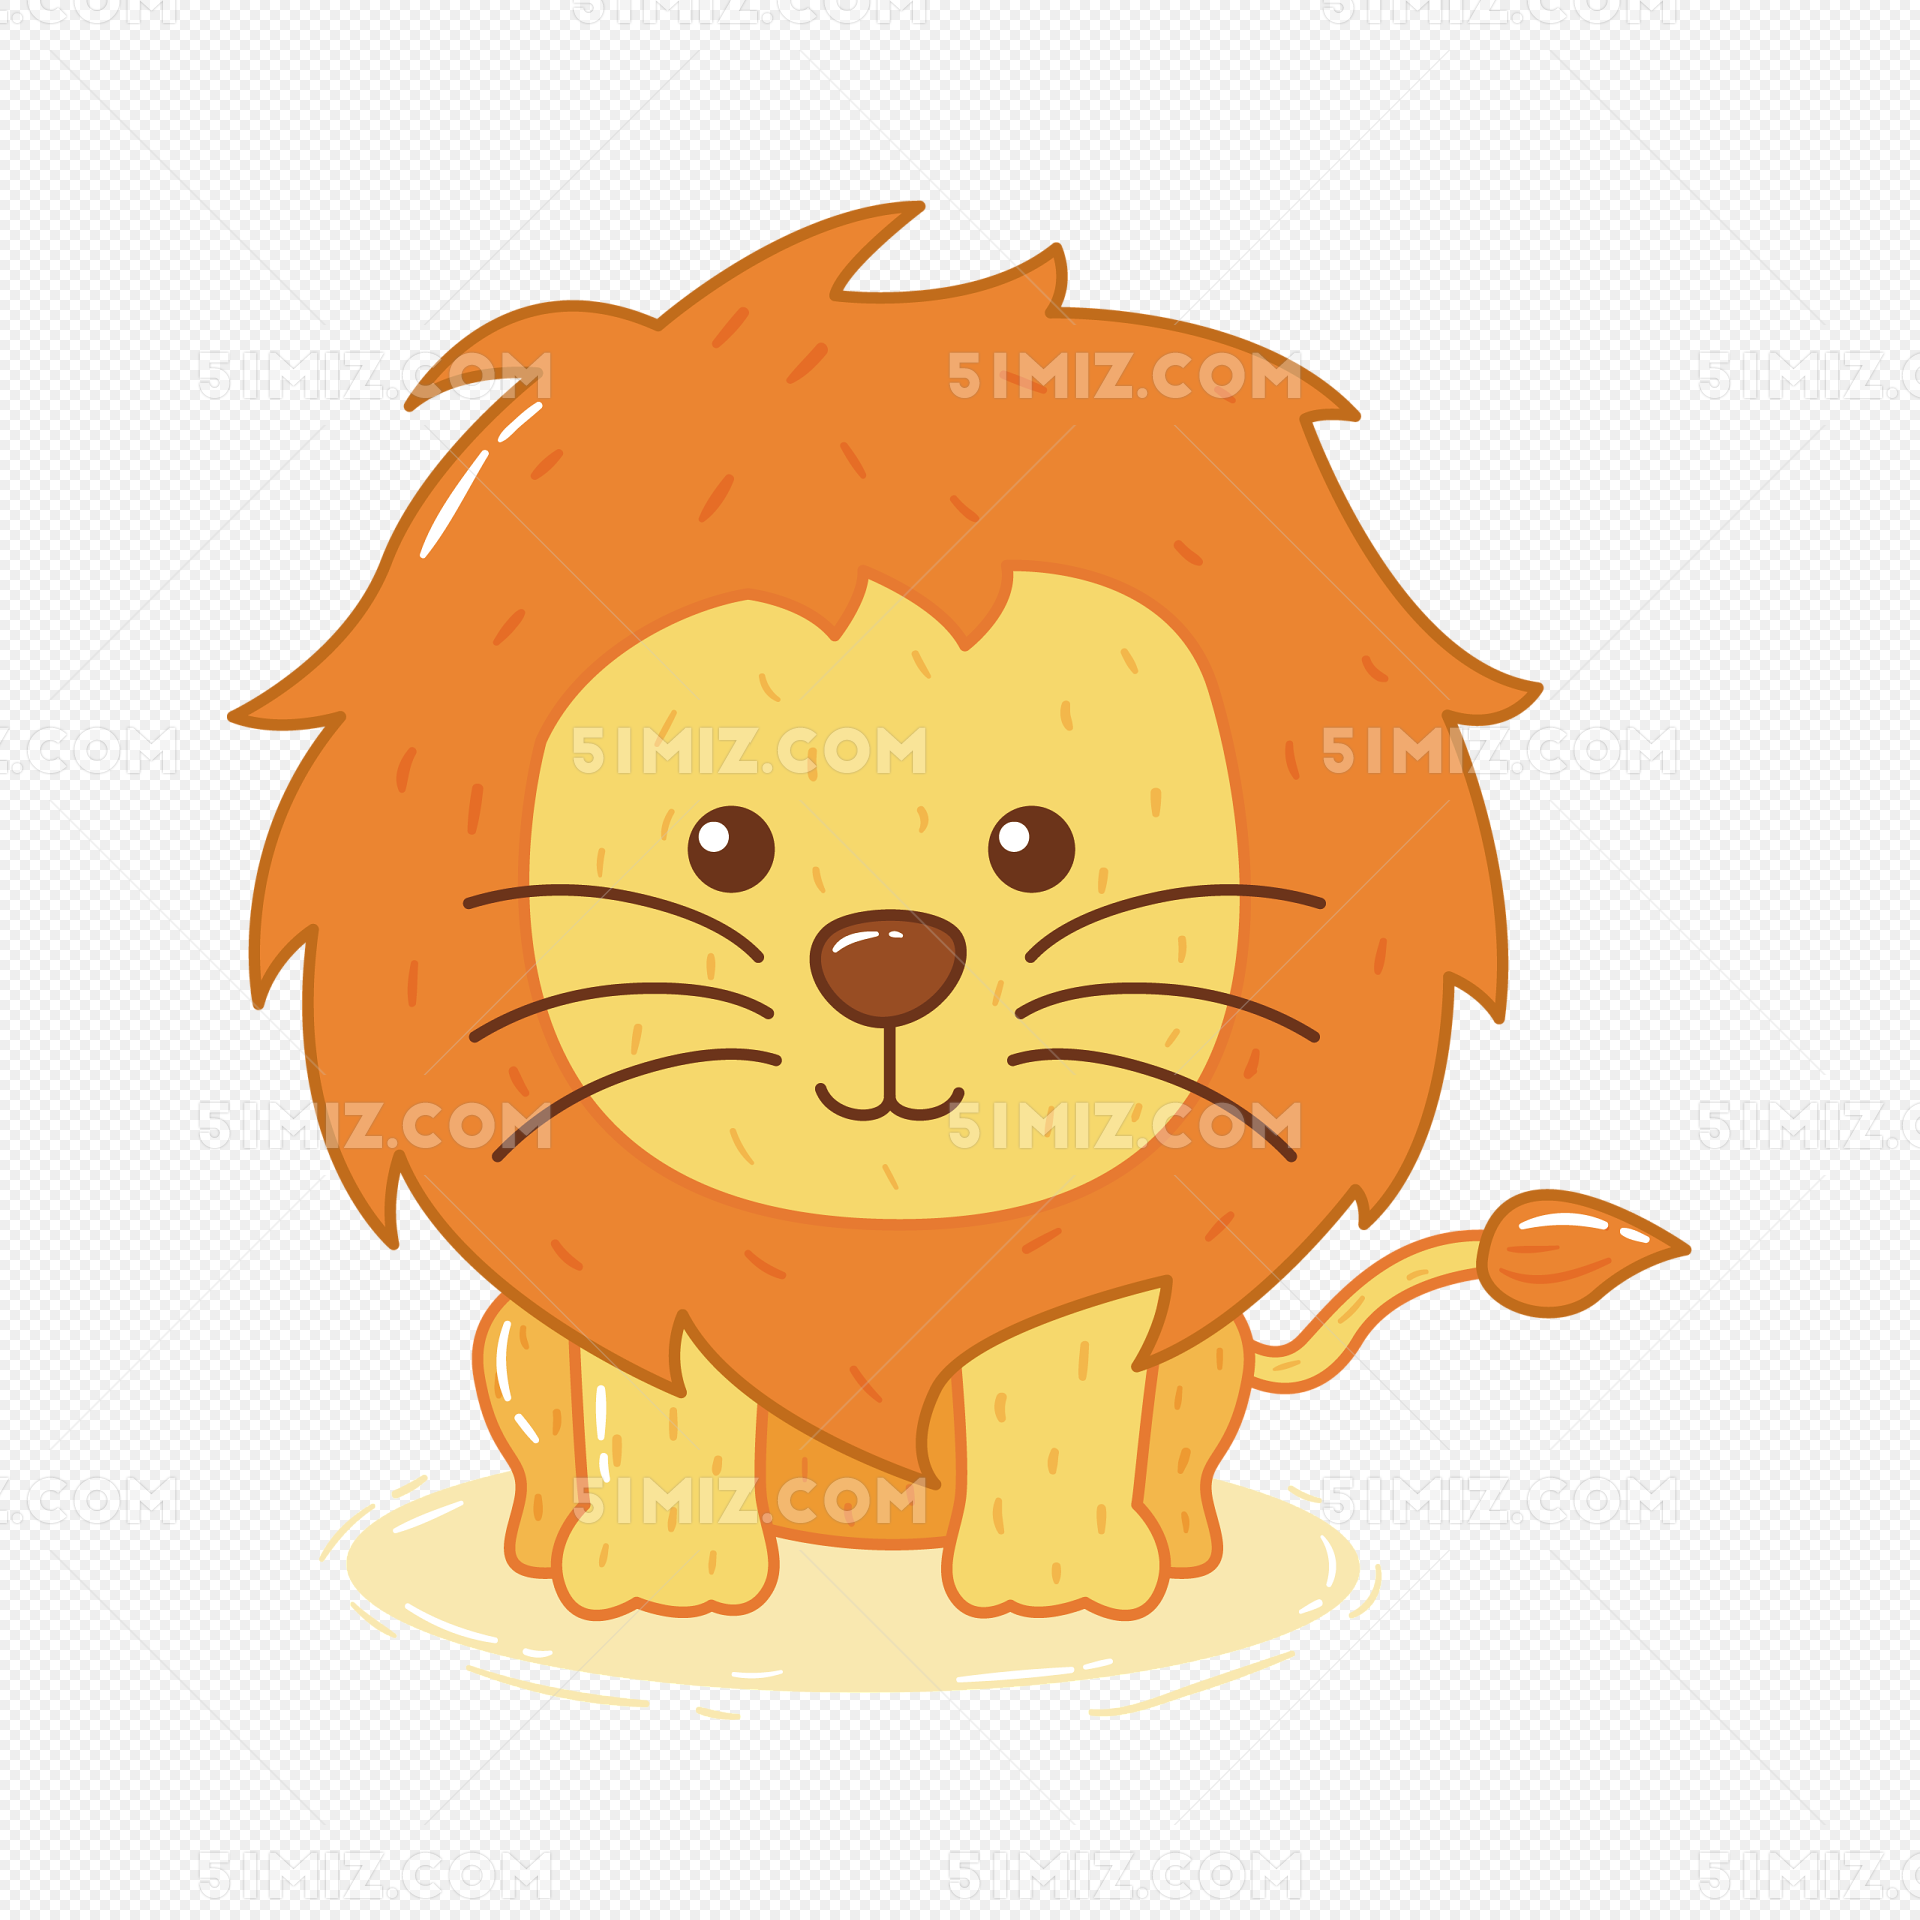 獅子 獅子可愛 可愛 可愛獅子, 可愛獅子, 卡通獅子, Q版獅子向量圖檔素材免費下載，PNG，EPS和AI素材下載 - Pngtree